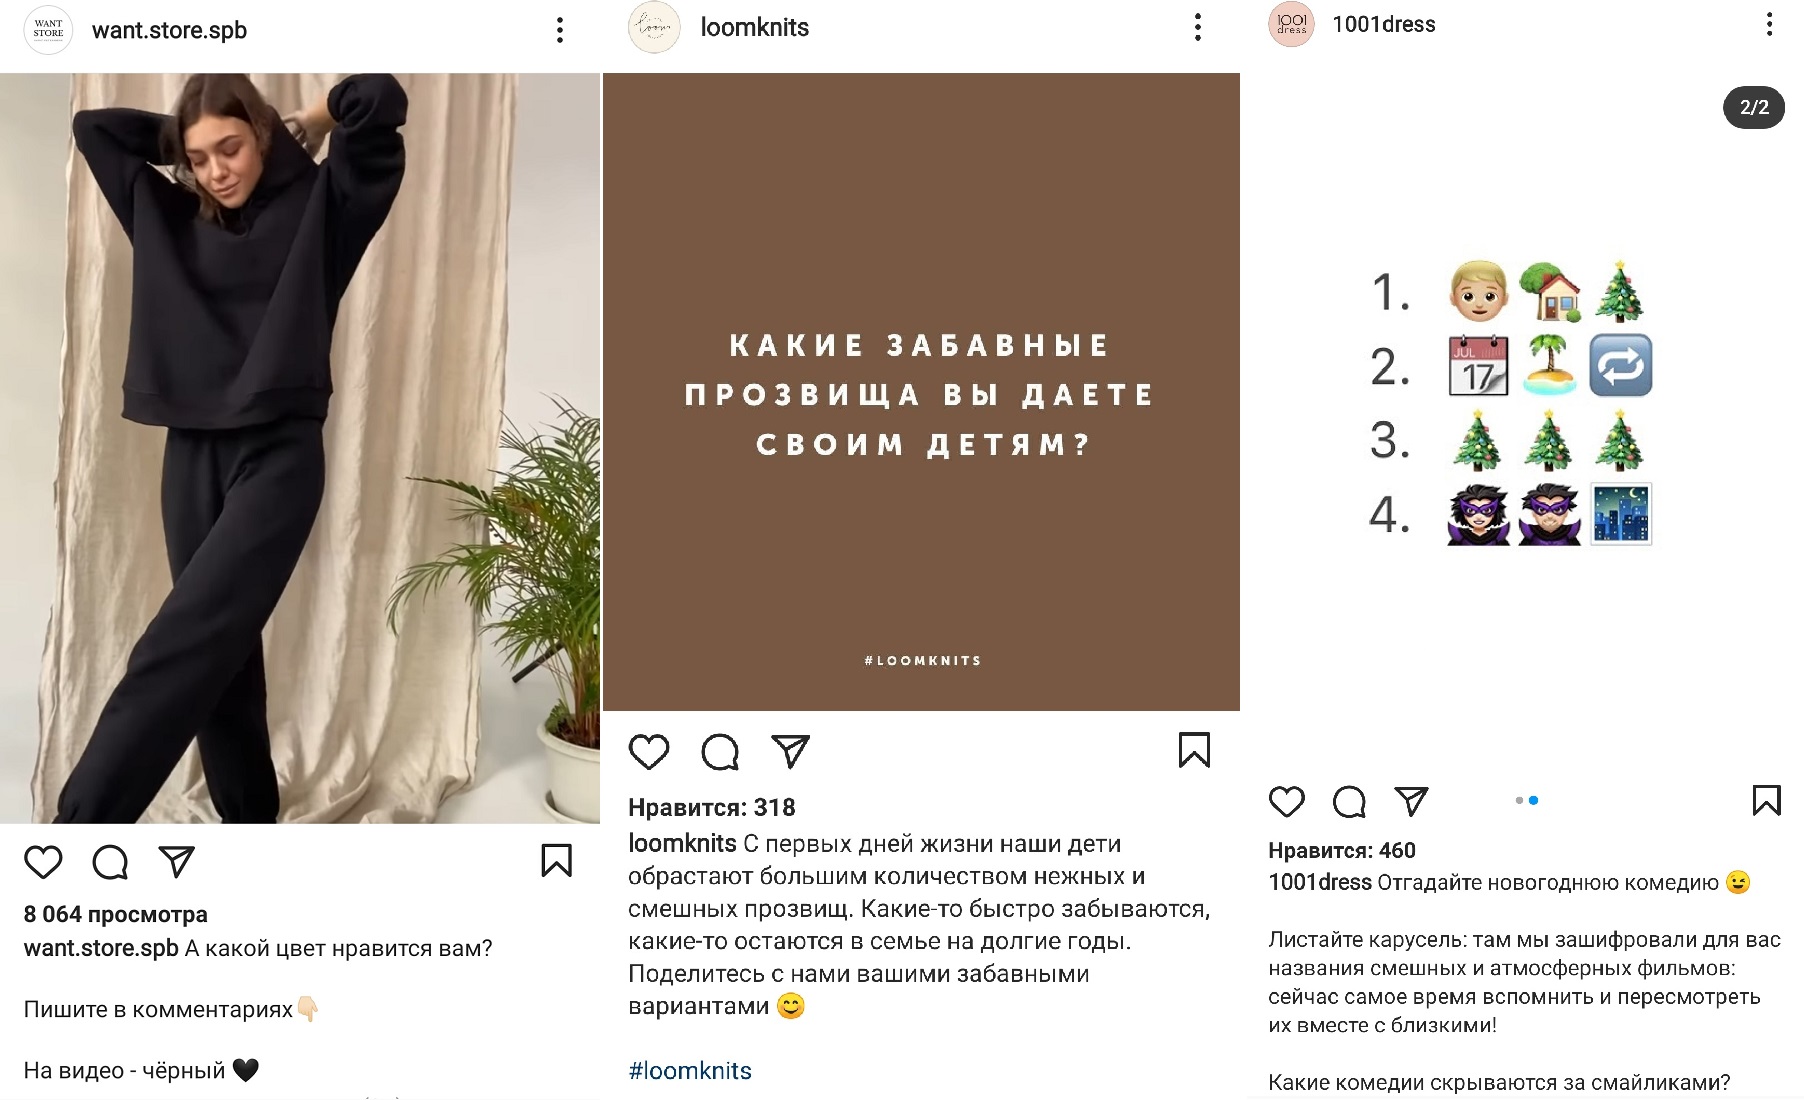 Интернет-магазин в Instagram: как оформить профиль и вести аккаунт | iProWeb